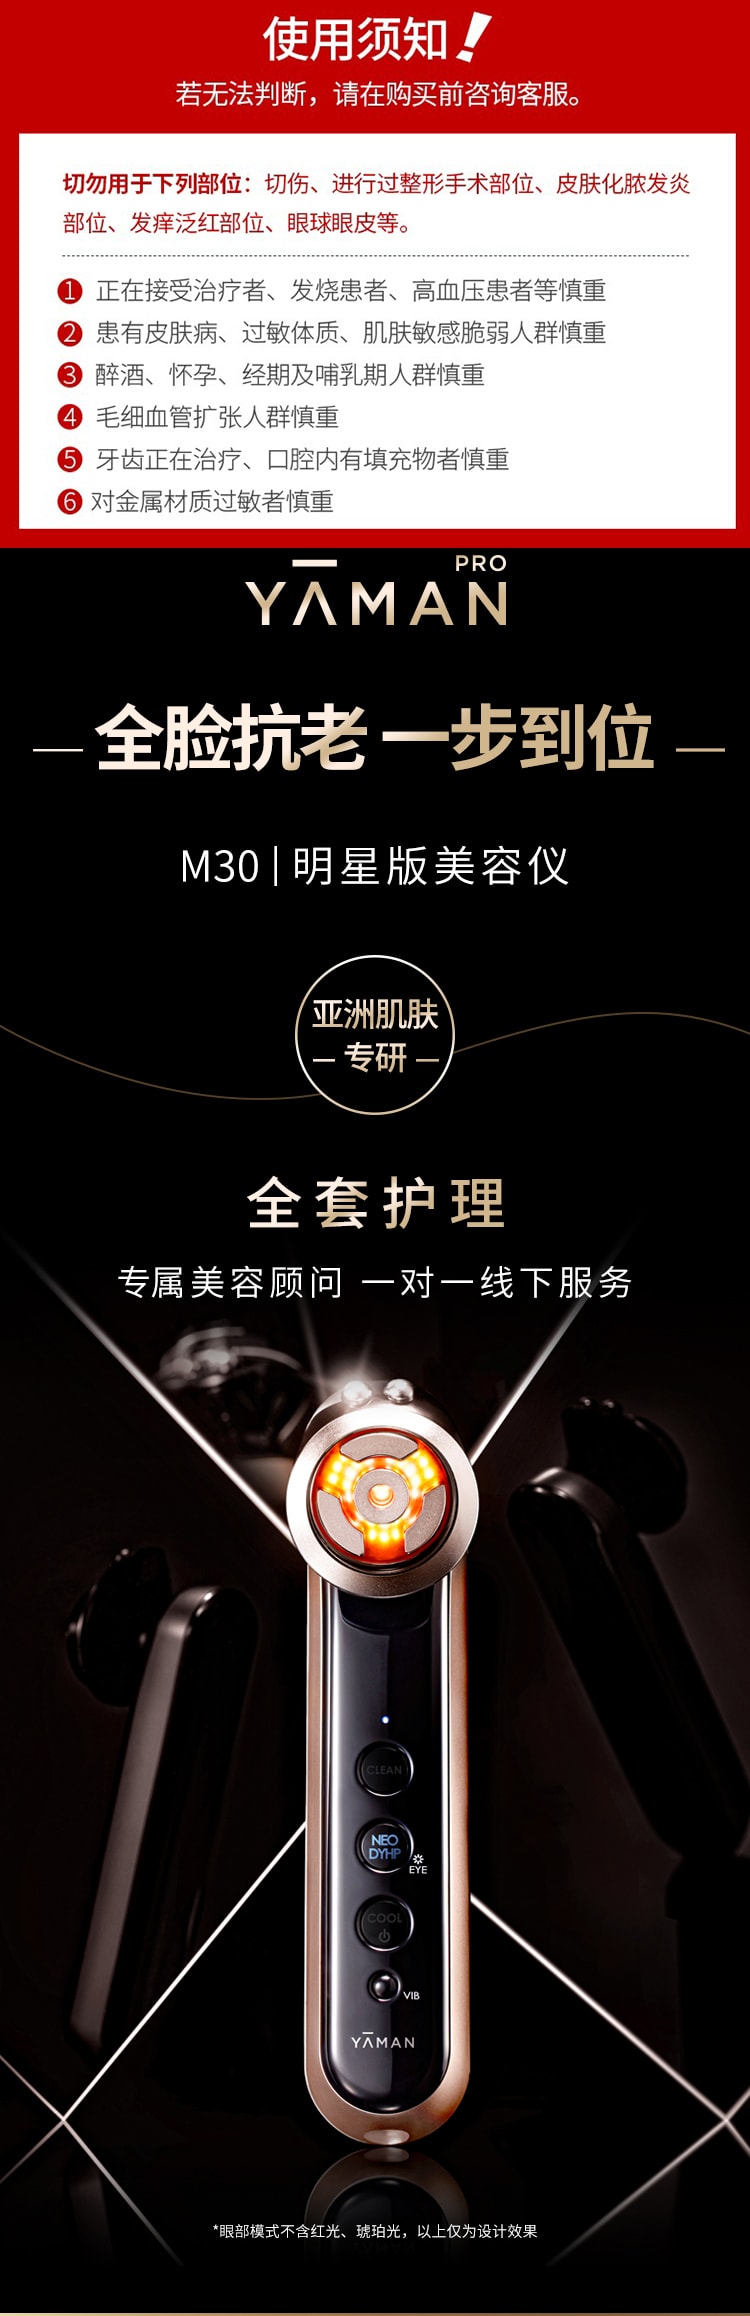 【日本直郵】YAMAN 雅萌 最新款 Max M30 3M明星版 赫茲射頻美容儀 1台 (M21-1升級款)